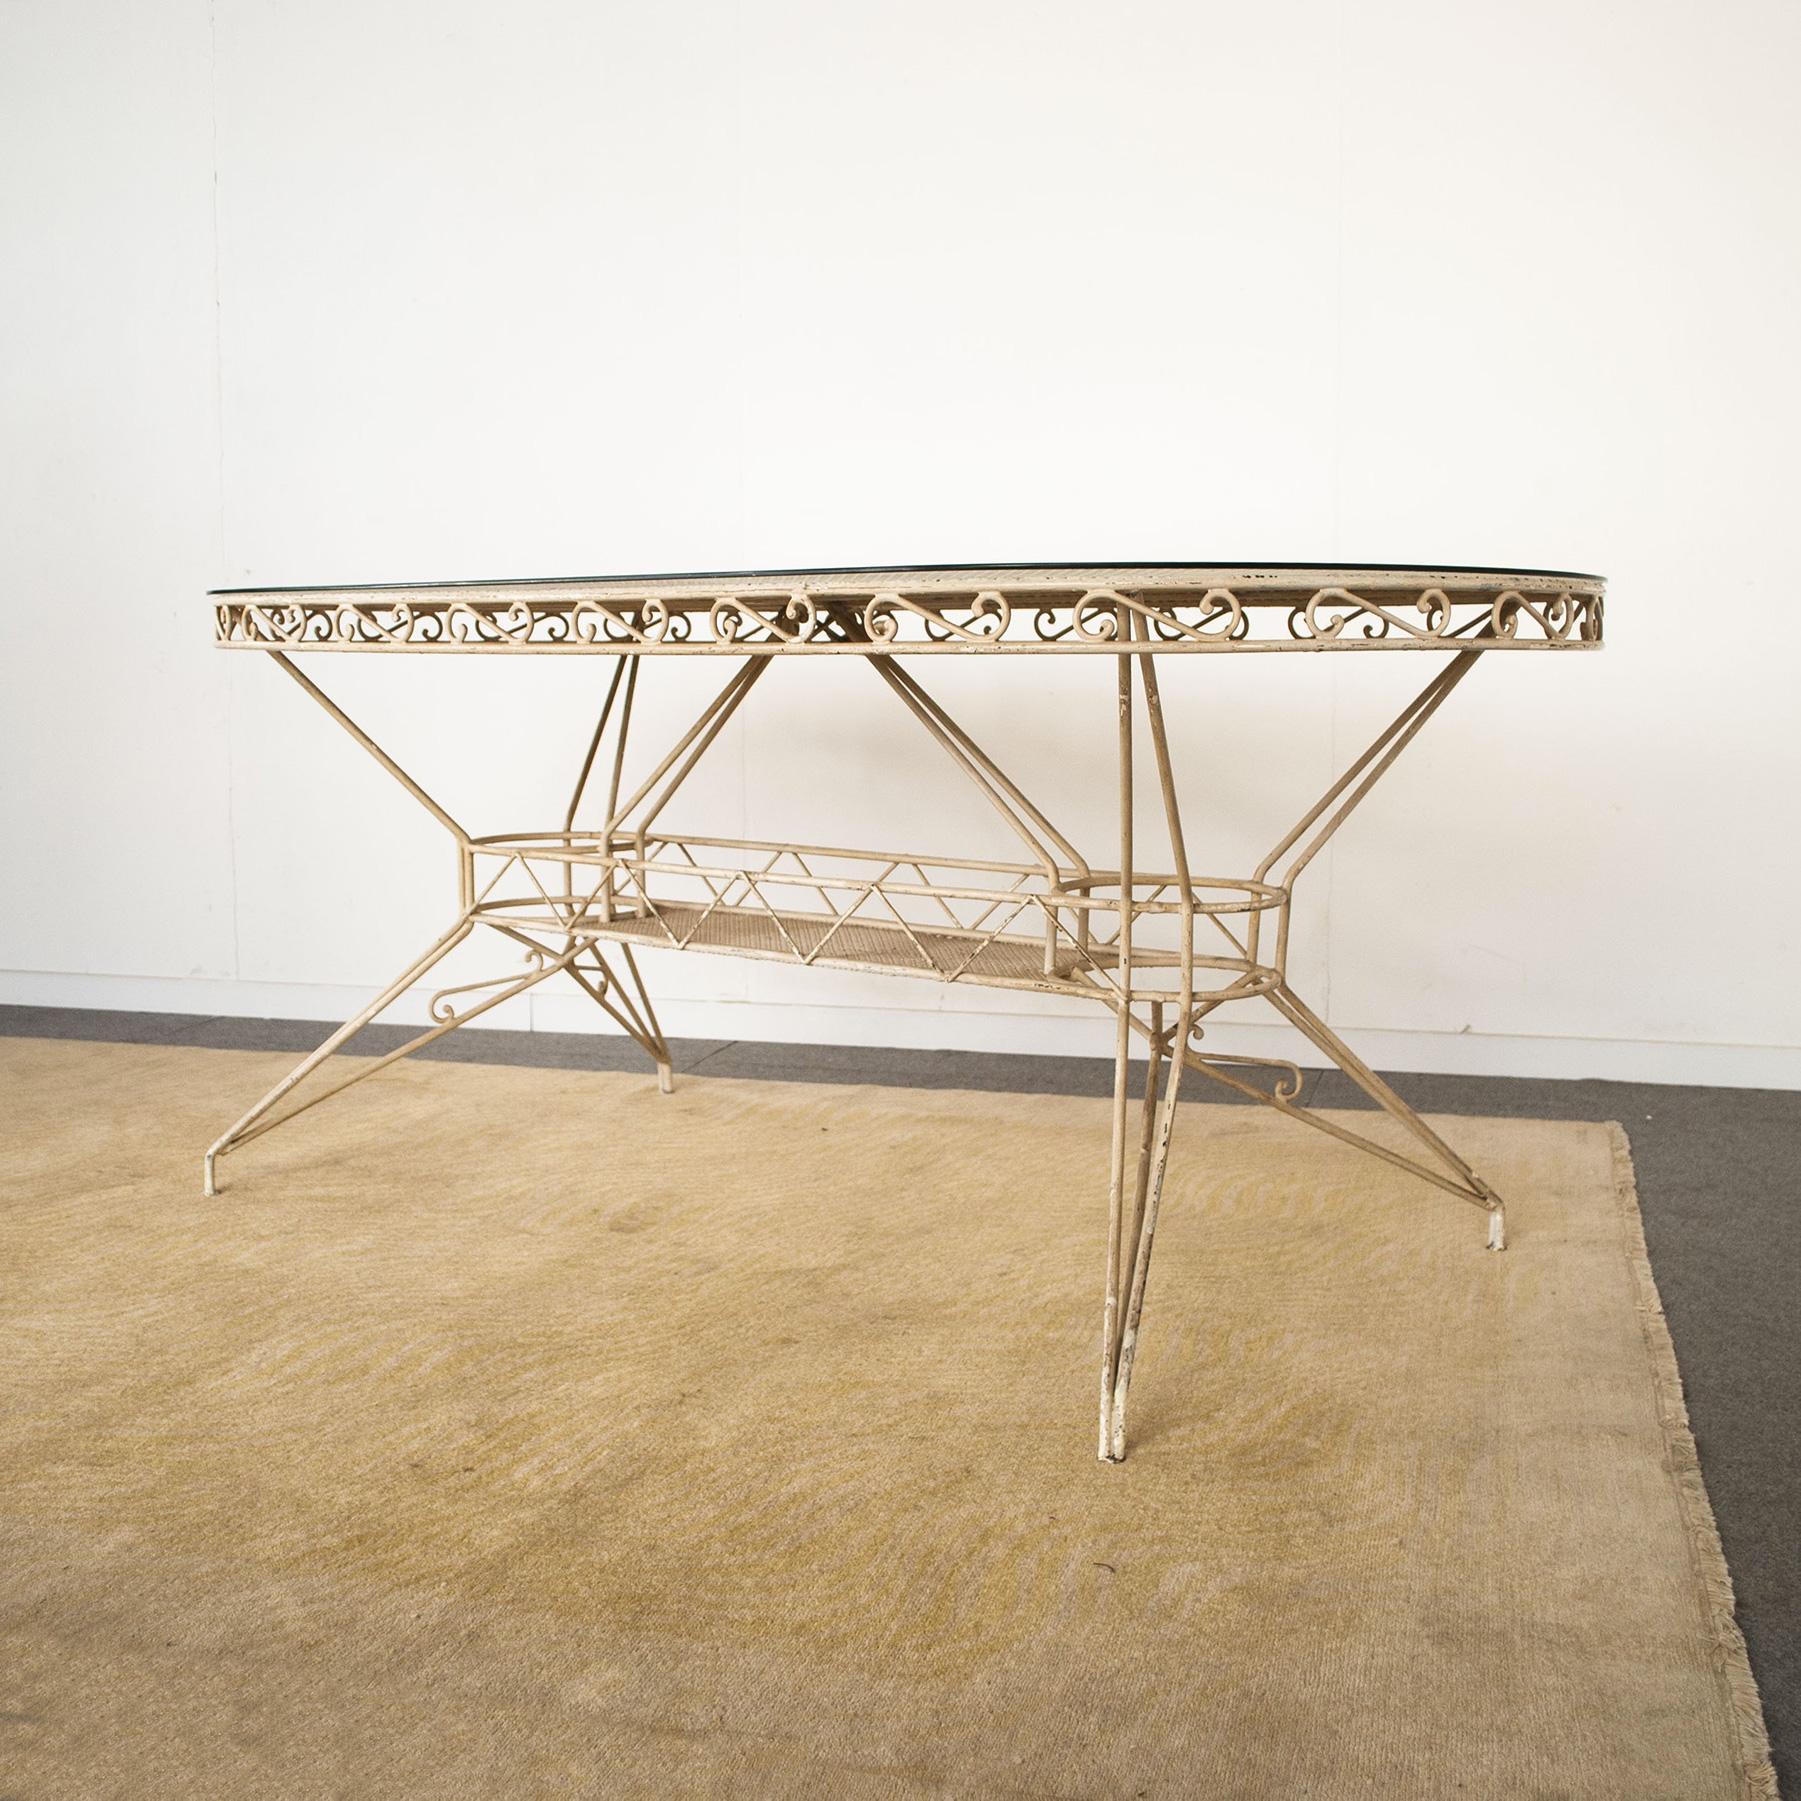 Wrought Iron Table from the 1950s Casa E Giardino Gio Ponti Style 1